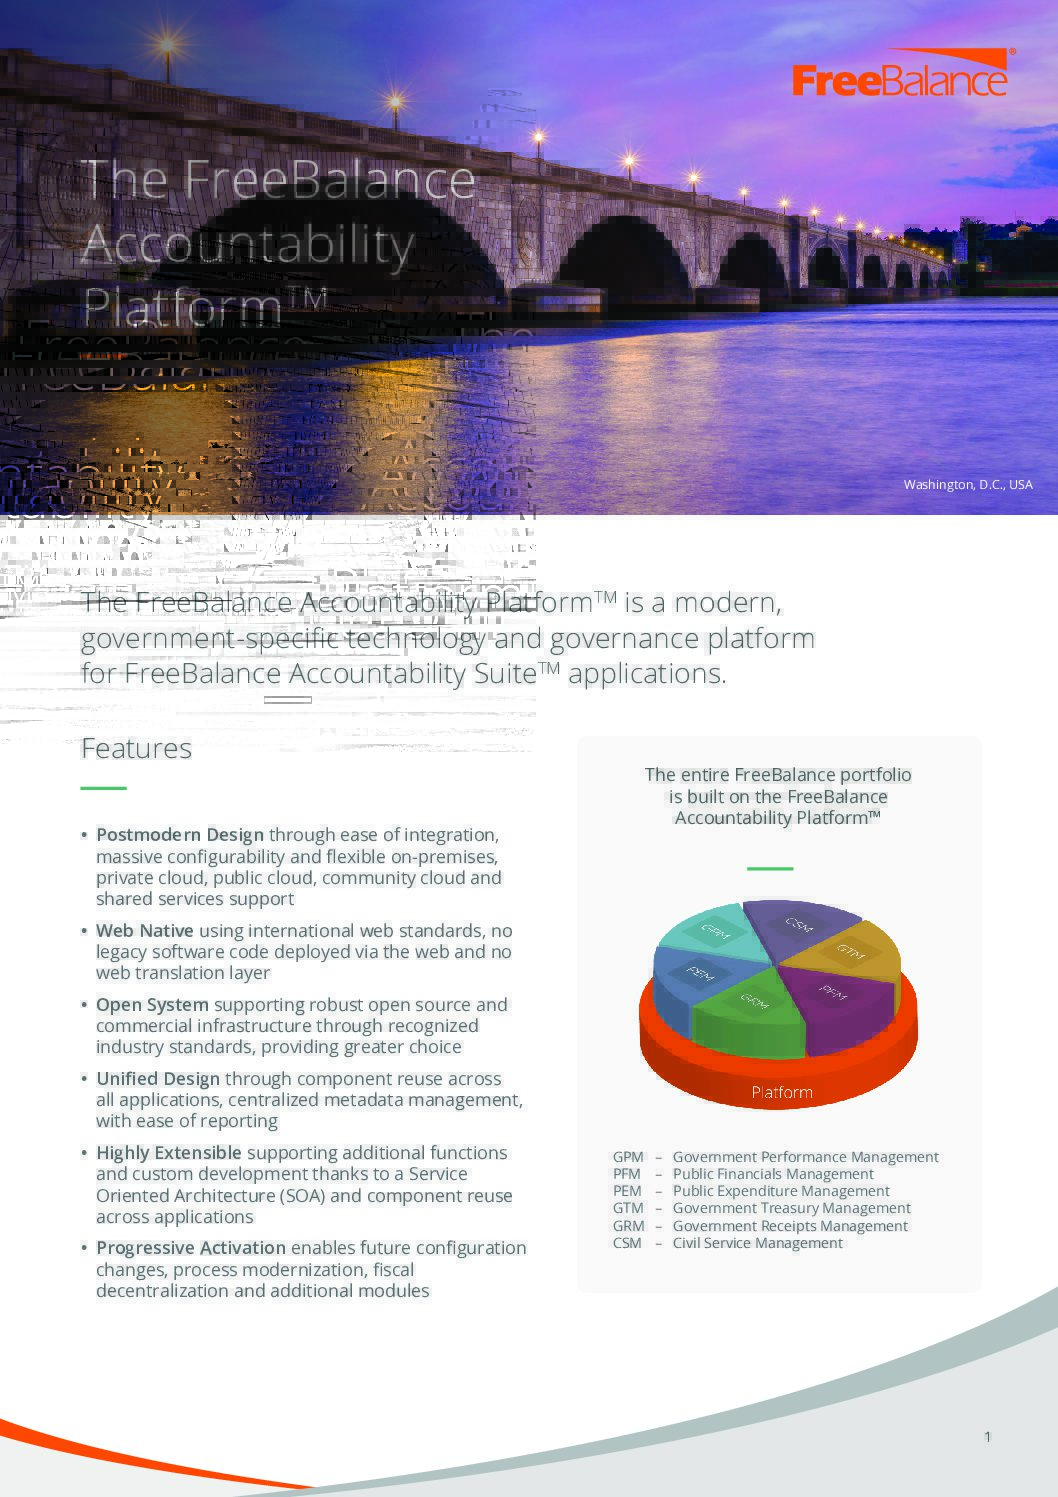 Fiche d'information sur la FreeBalance Accountability Platform™